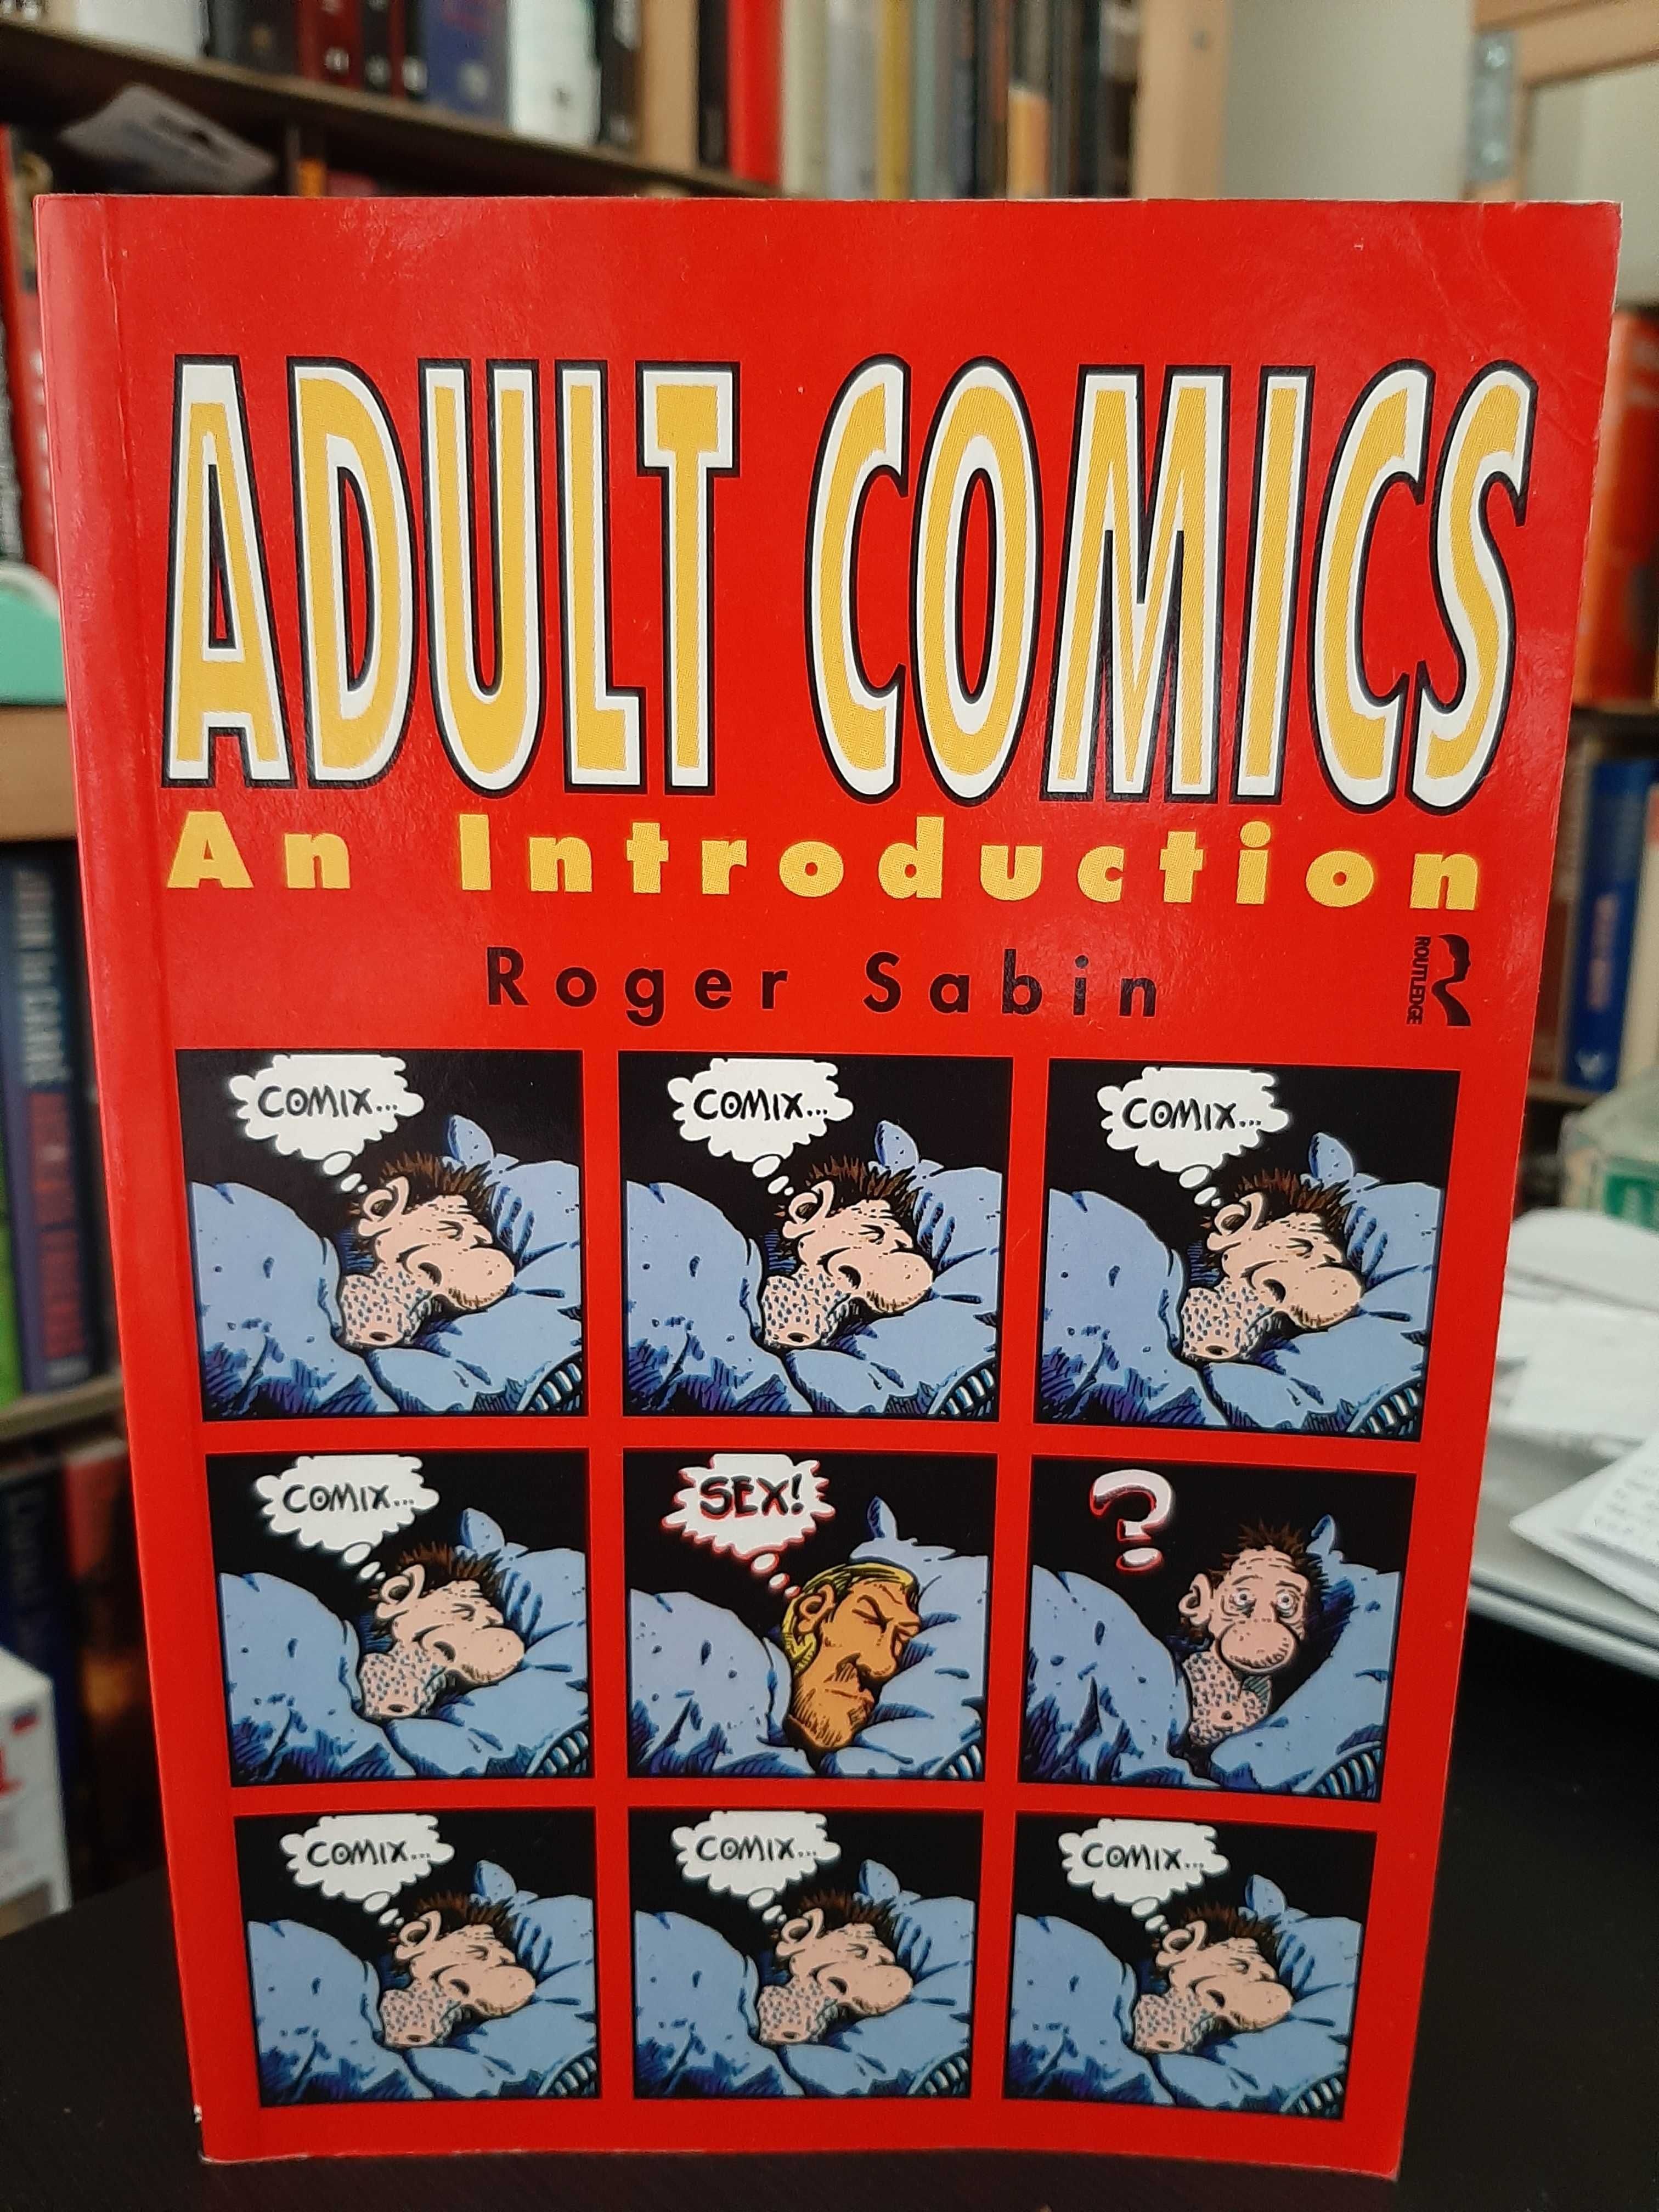 Roger Sabin – Adult Comics: an Introduction